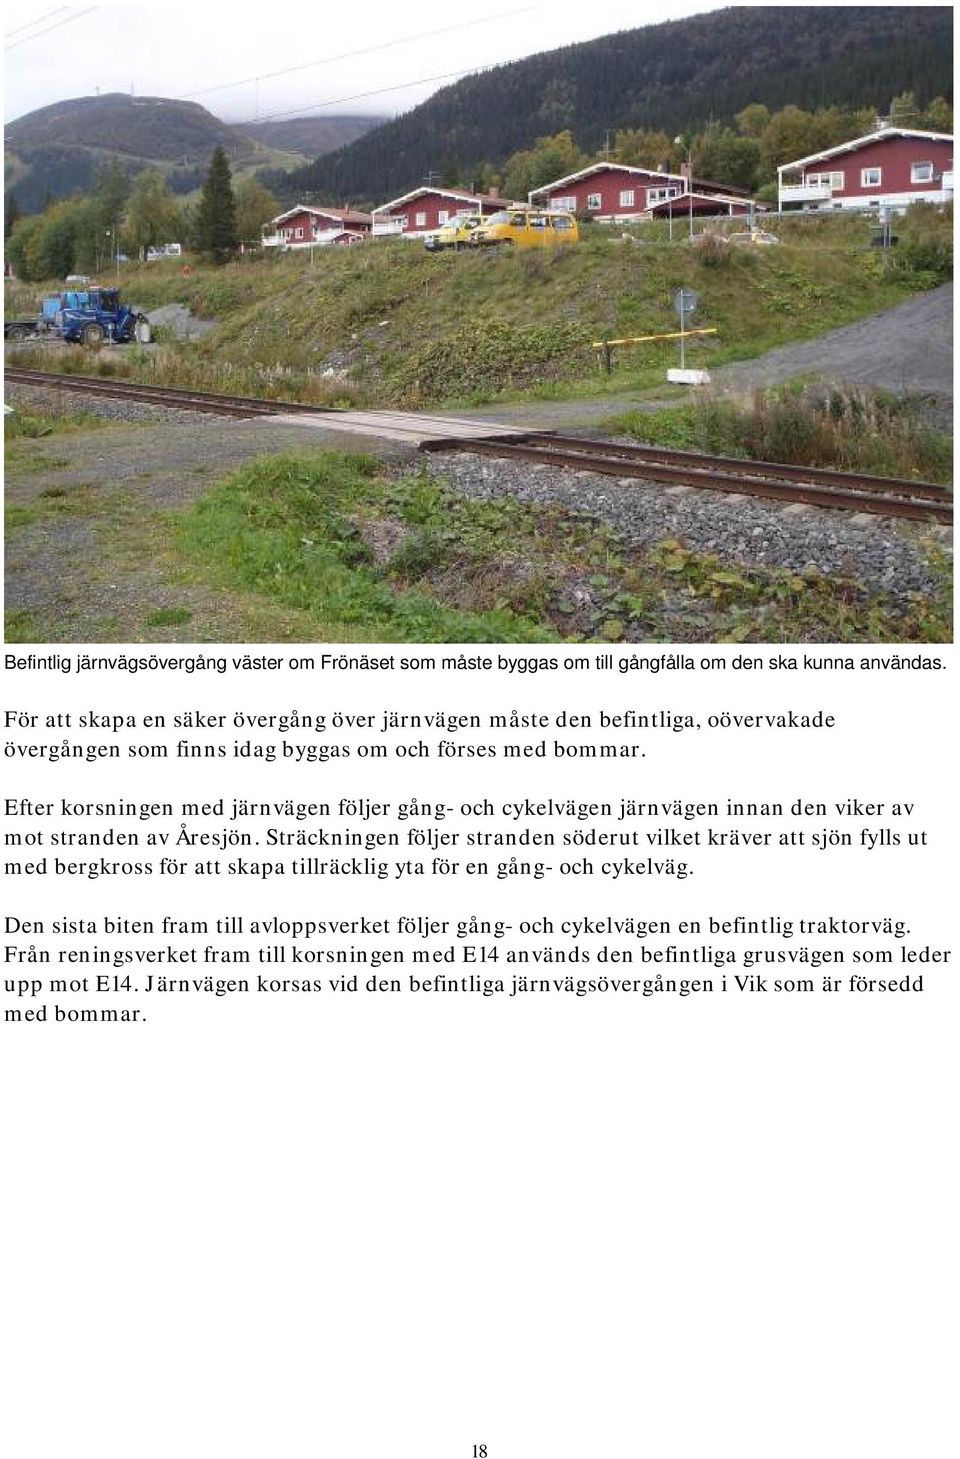 Efter korsningen med järnvägen följer gång- och cykelvägen järnvägen innan den viker av mot stranden av Åresjön.